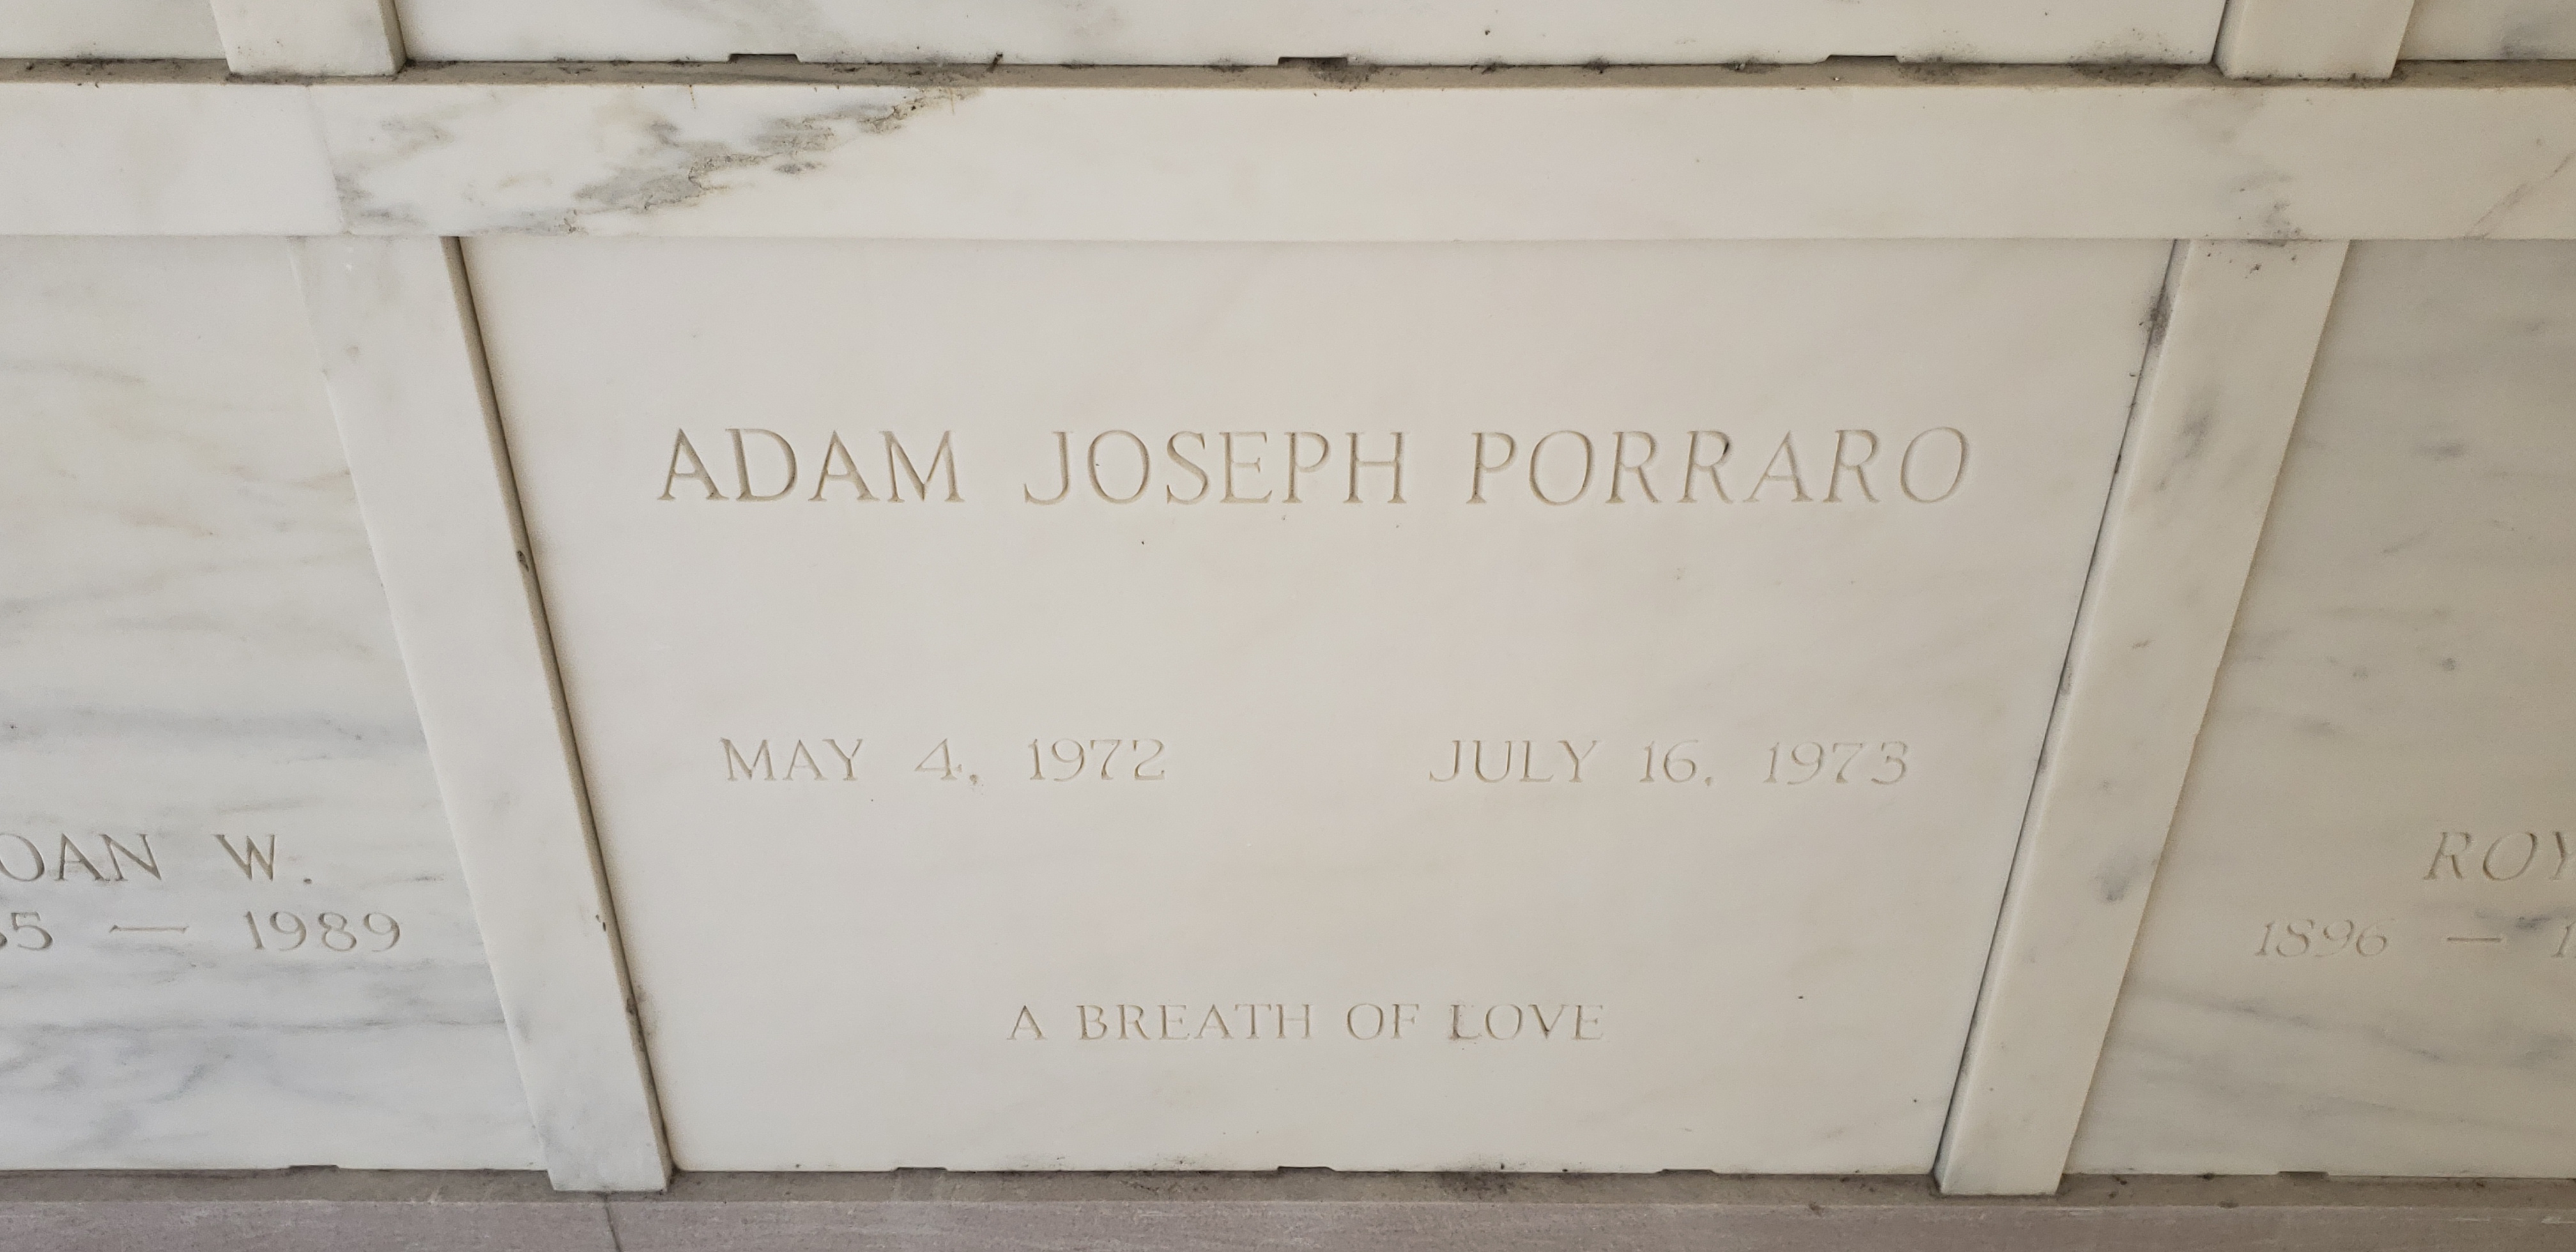 Adam Joseph Porraro